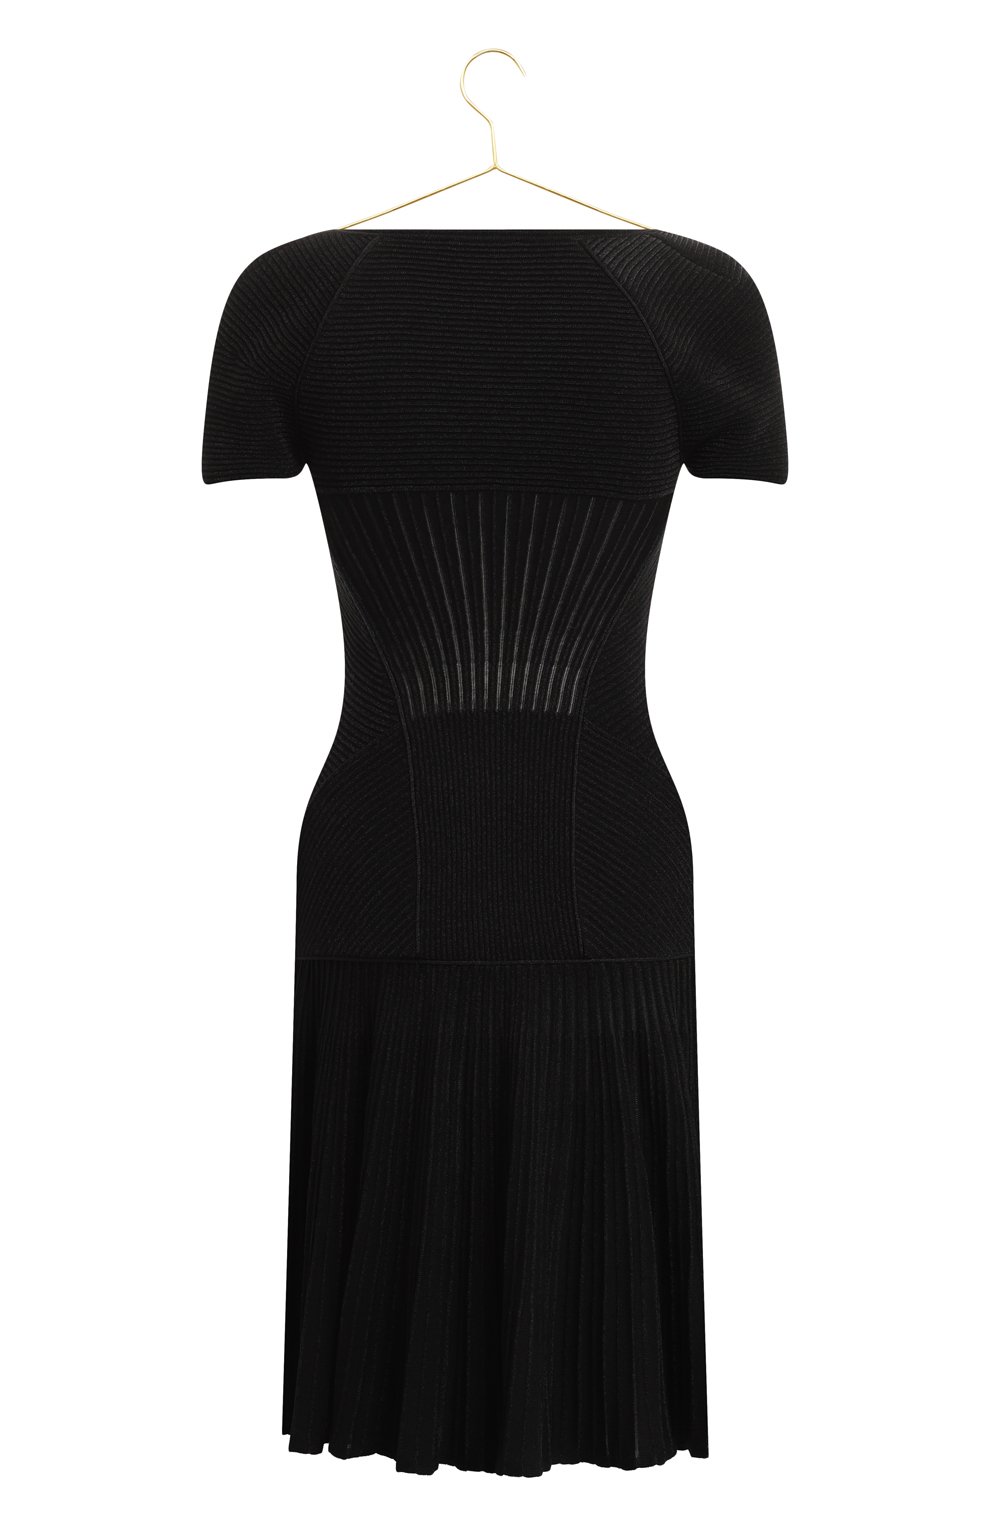 Платье из шерсти и вискозы | Alexander McQueen | Чёрный - 2